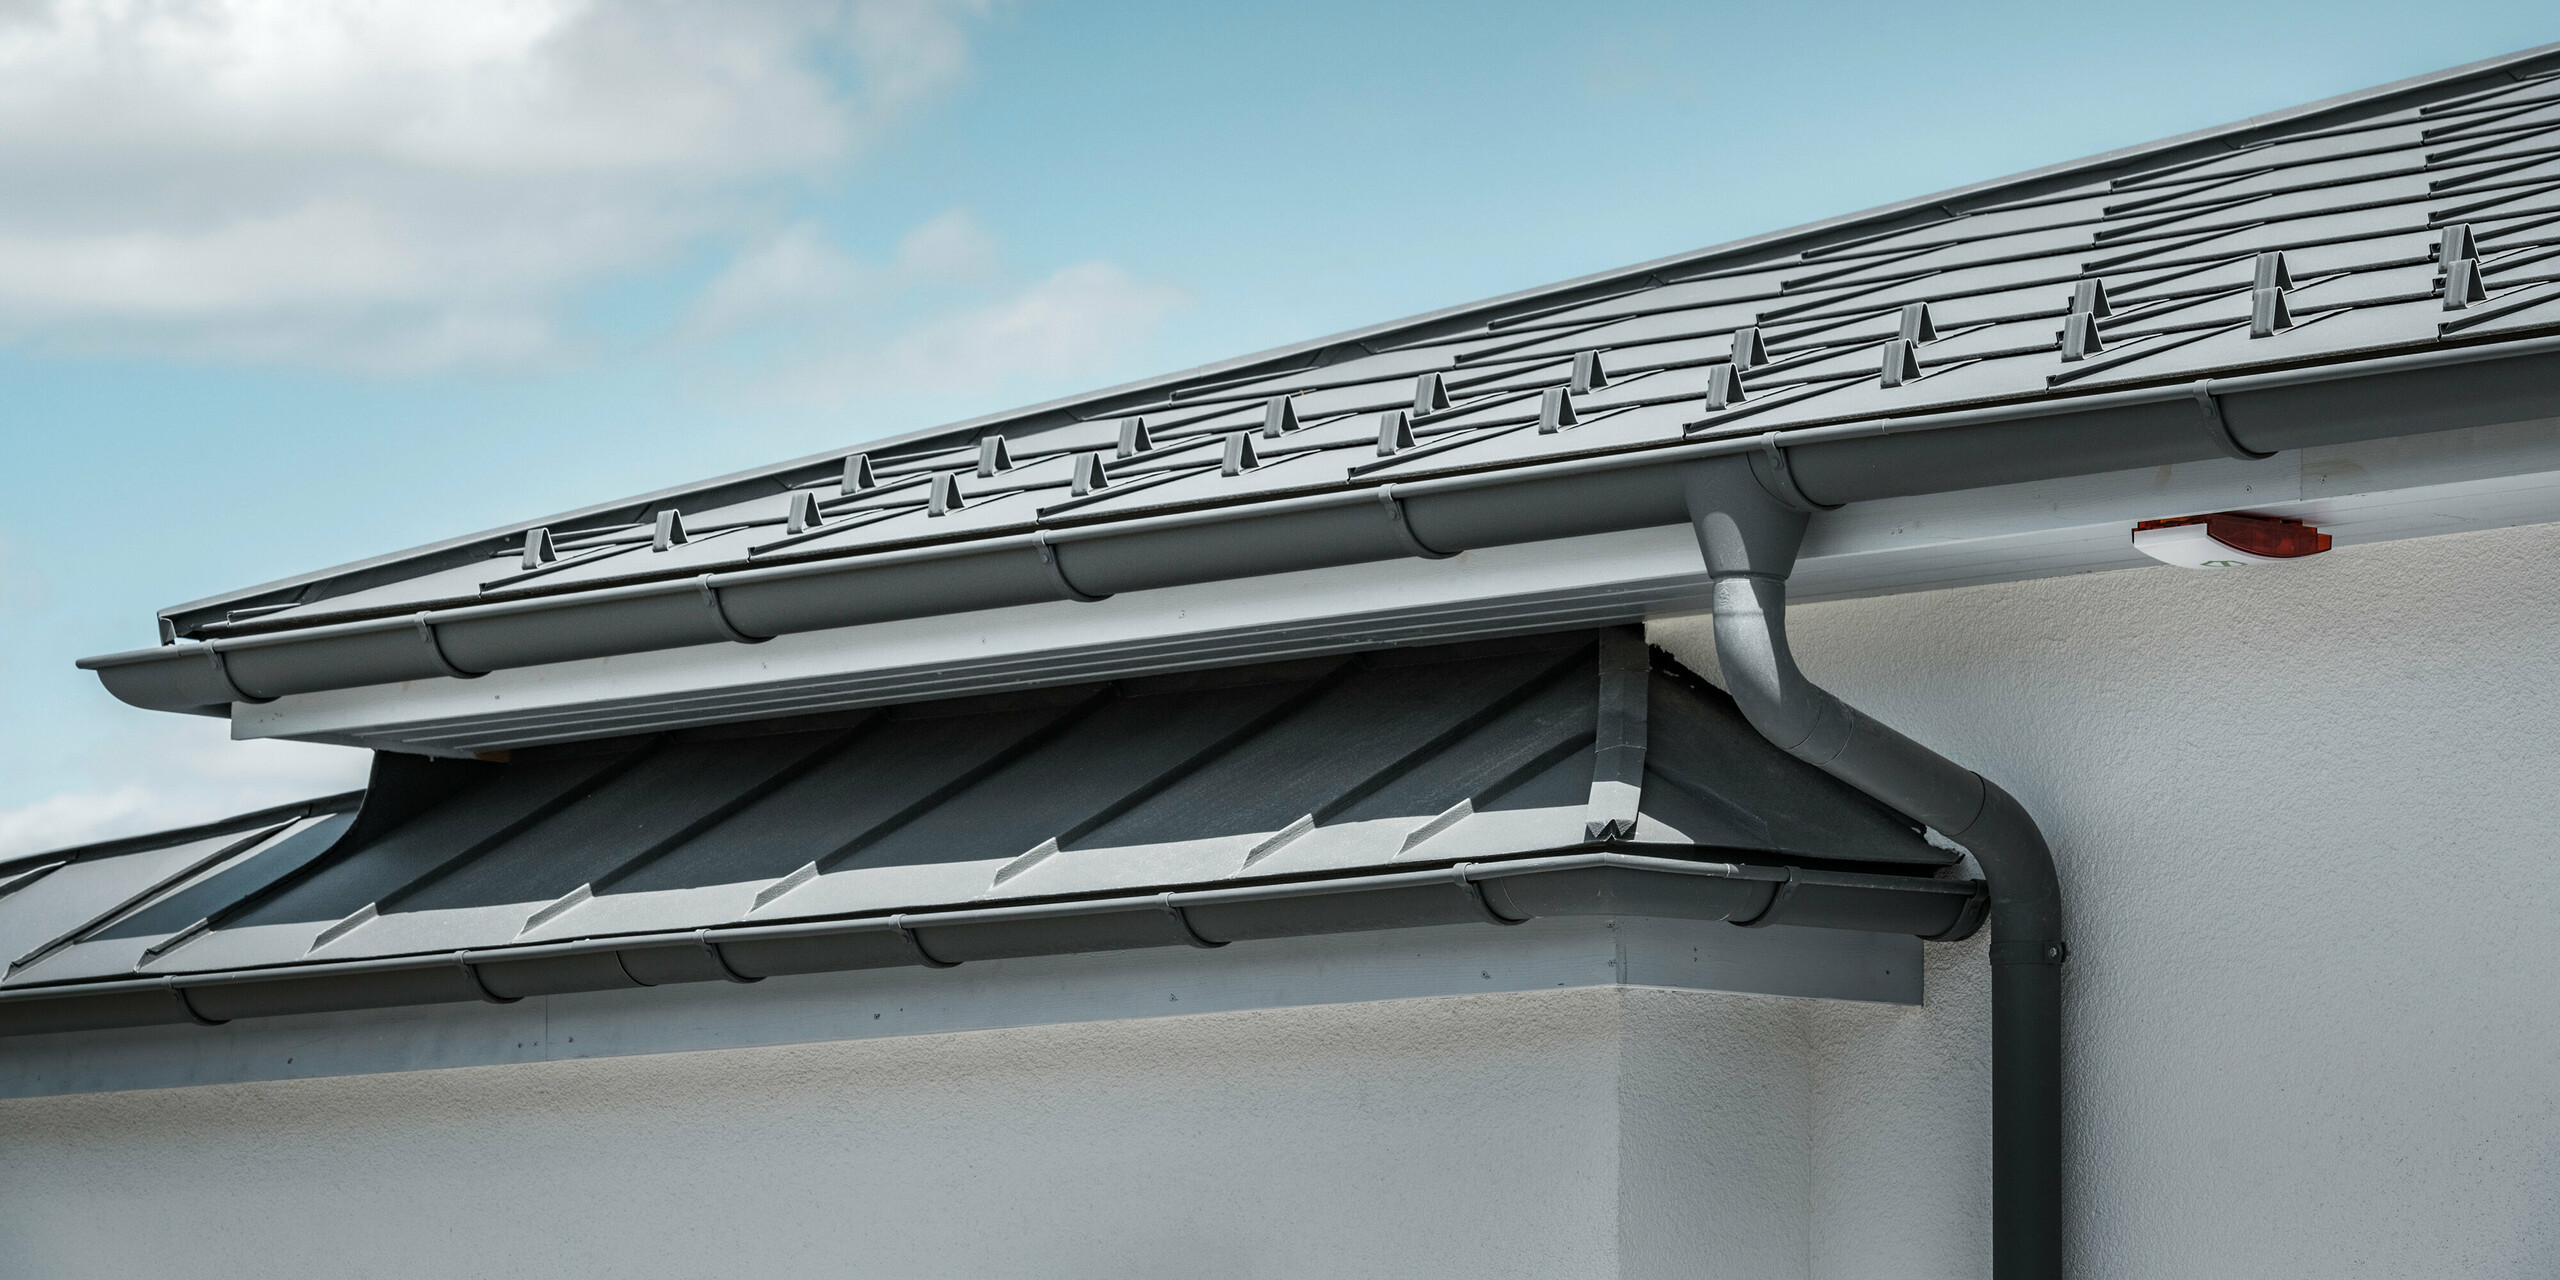 Die Detailaufnahme eines Einfamilienhauses in Ilmenau, Thüringen, zeigt das effiziente PREFA Dachentwässerungssystem in P.10 Dunkelgrau. Das Bild fokussiert auf die nahtlose Integration der Hängerinne und des Ablaufrohrs, die eine optimale Ableitung von Regenwasser gewährleisten. Die dunkelgraue Stehfalzdeckung aus PREFALZ und die Dachplatten R.16, ebenfalls in Dunkelgrau, runden das hochwertige Gesamtbild des Daches ab und spiegeln die Kombination aus Funktionalität und anspruchsvollem Design wider.